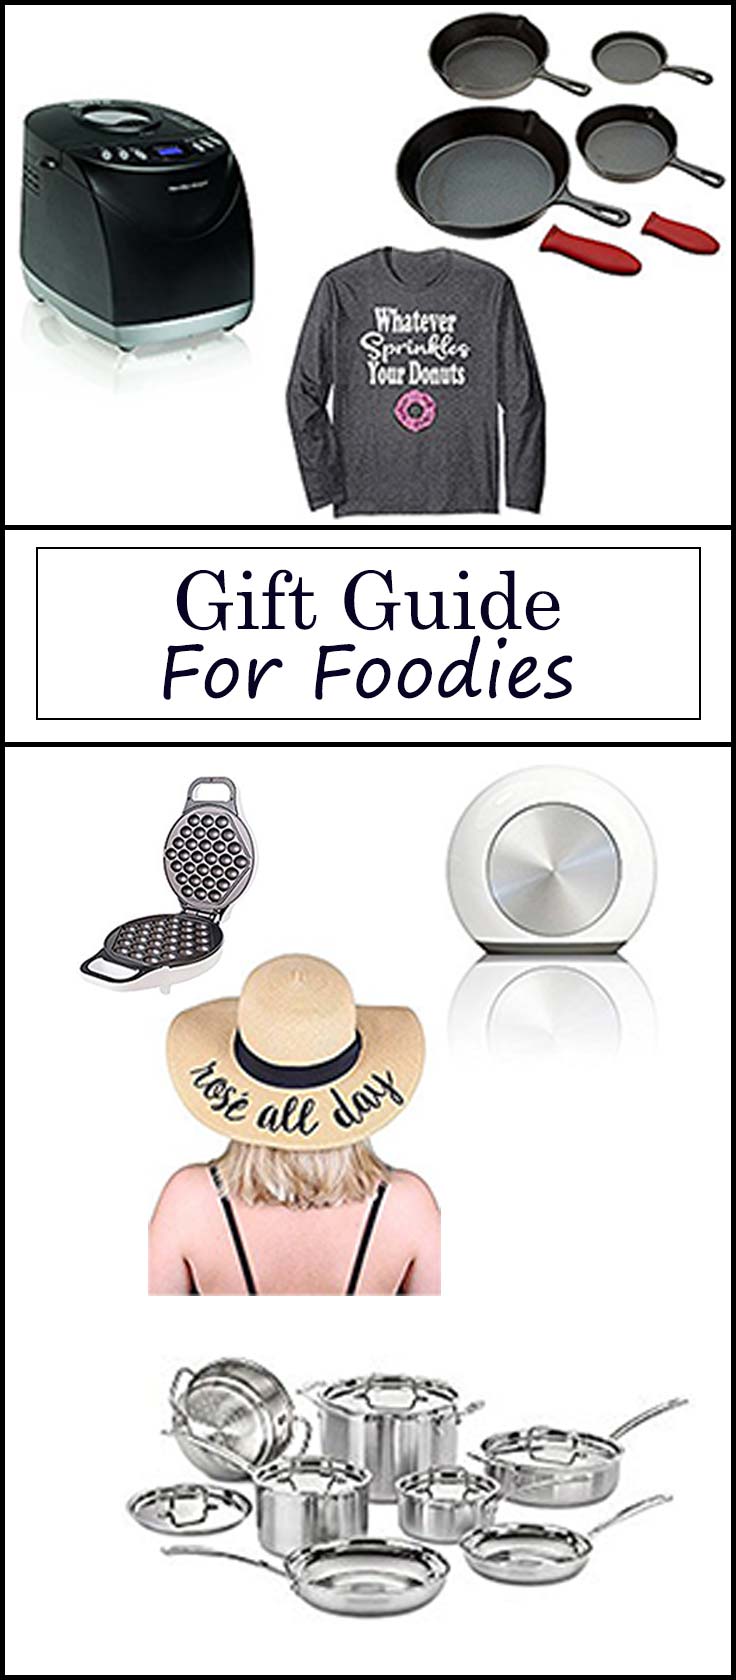 Gift Guide for Foodiesfrom www.seasonedsprinkles.com